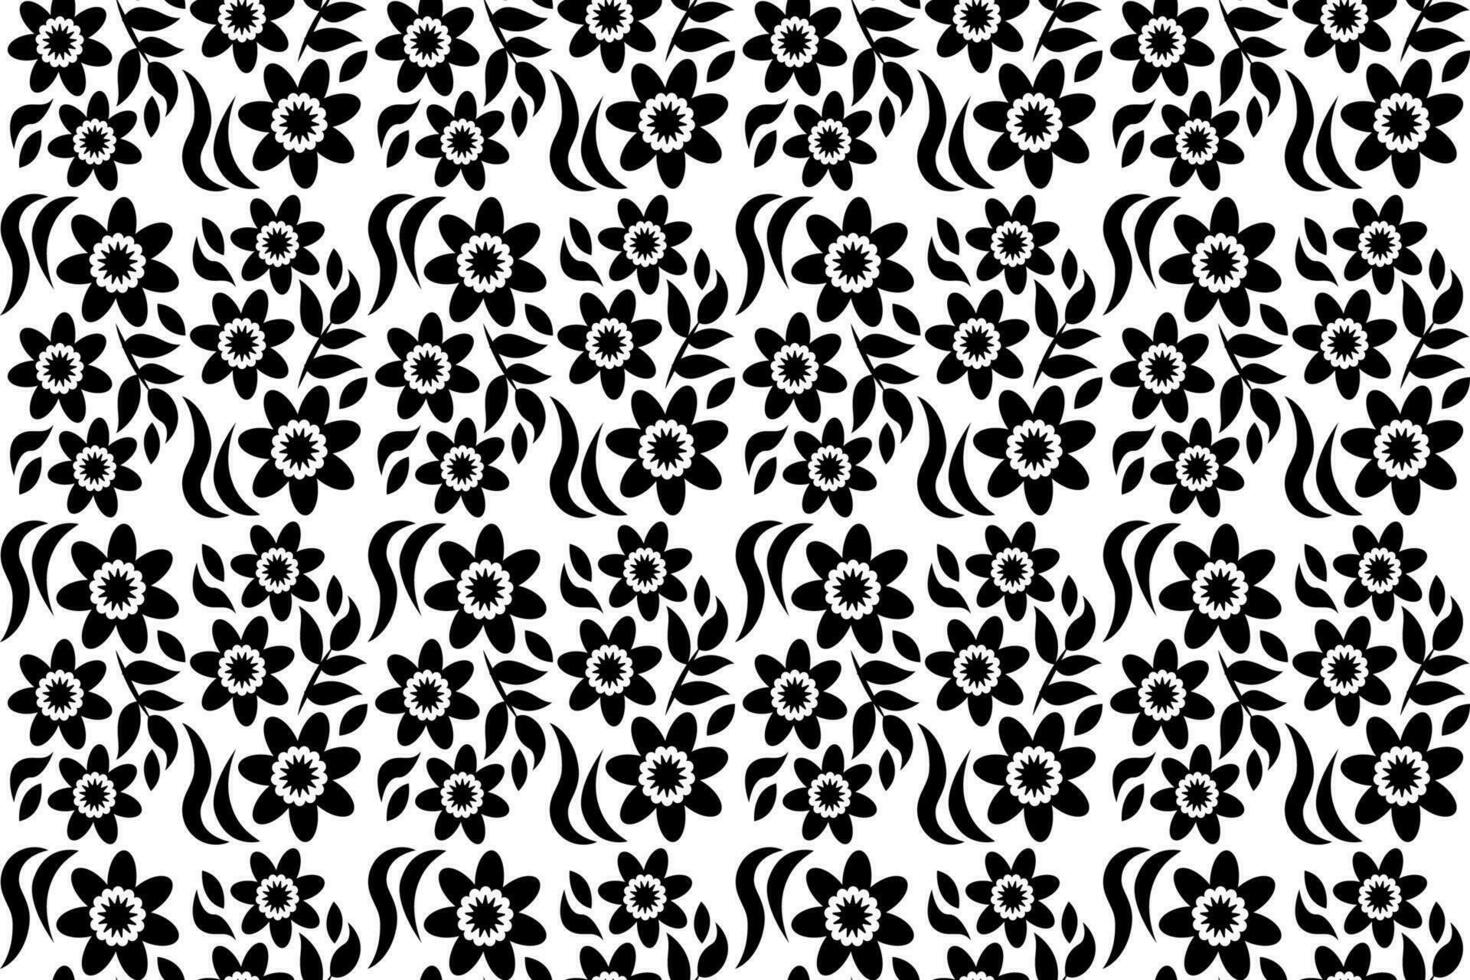 abstrakt Blumen- nahtlos Muster. schwarz und Weiß stilisiert, dekorativ Design. endlos wiederholen einfarbig Muster mit eben Blumen- Design Elemente. vektor